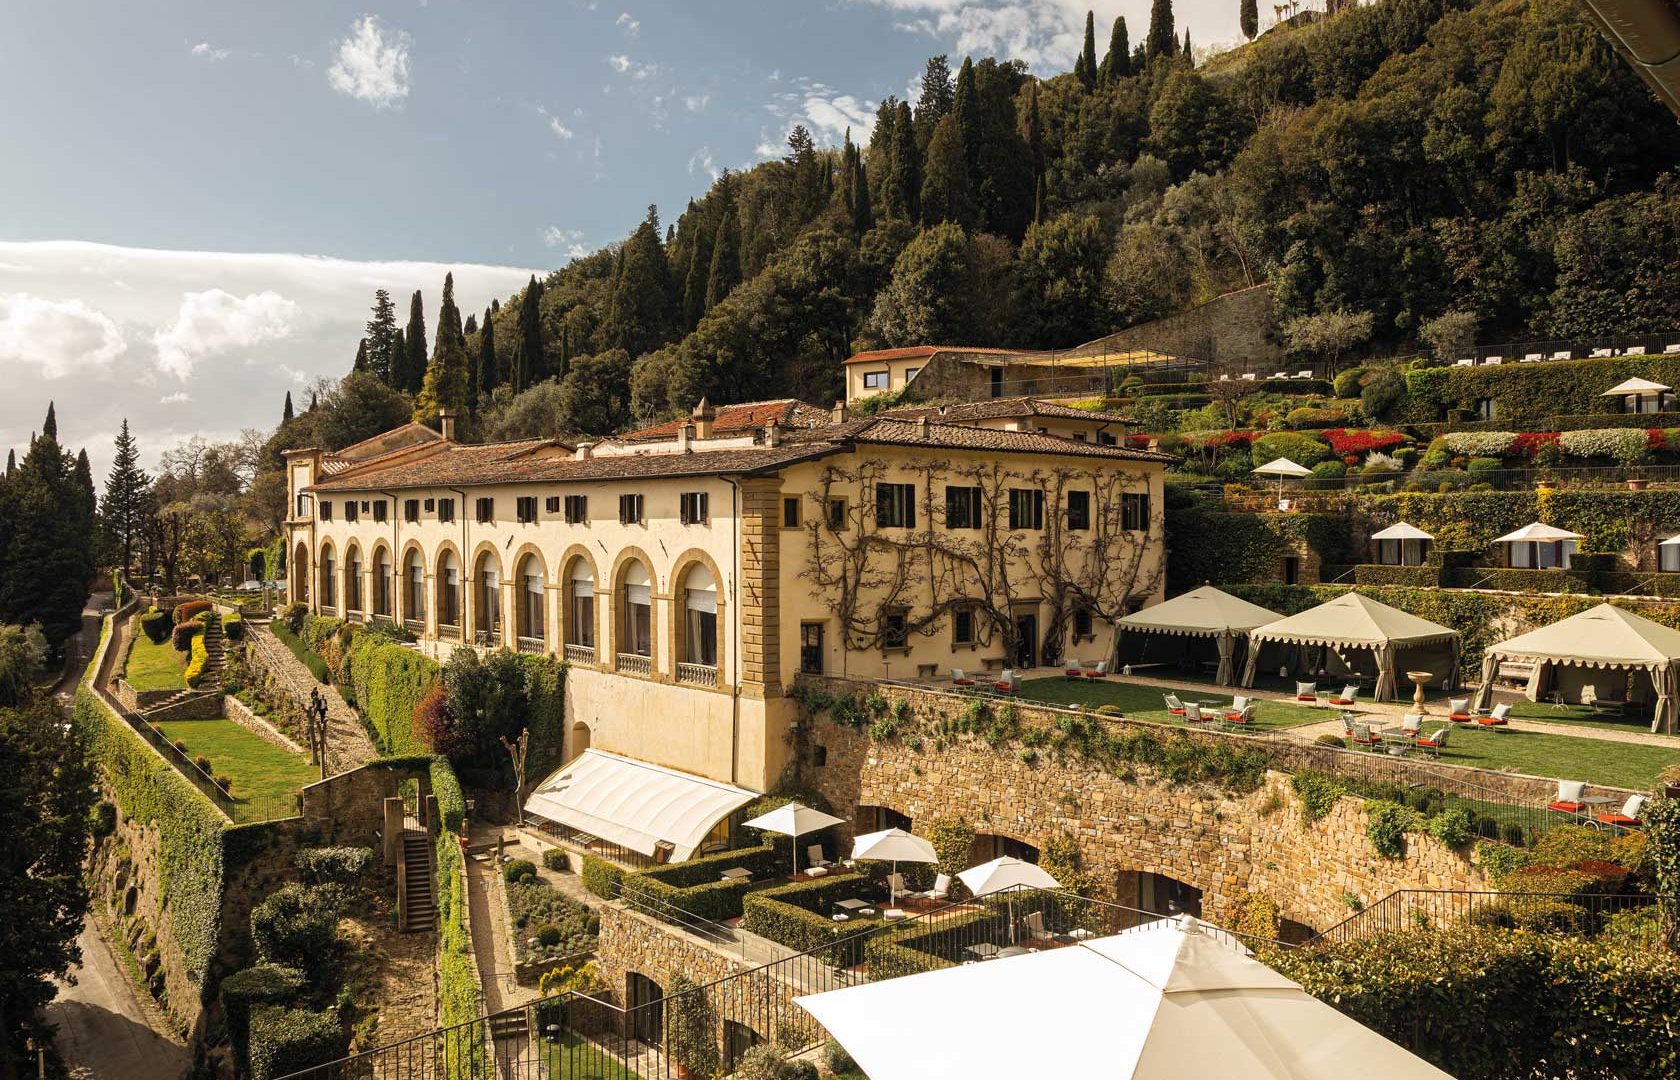 Esterni di Villa San Michele, di cui Luigi Fragola Architects ha curato il design interno insieme al suo studio arredamento interni Firenze